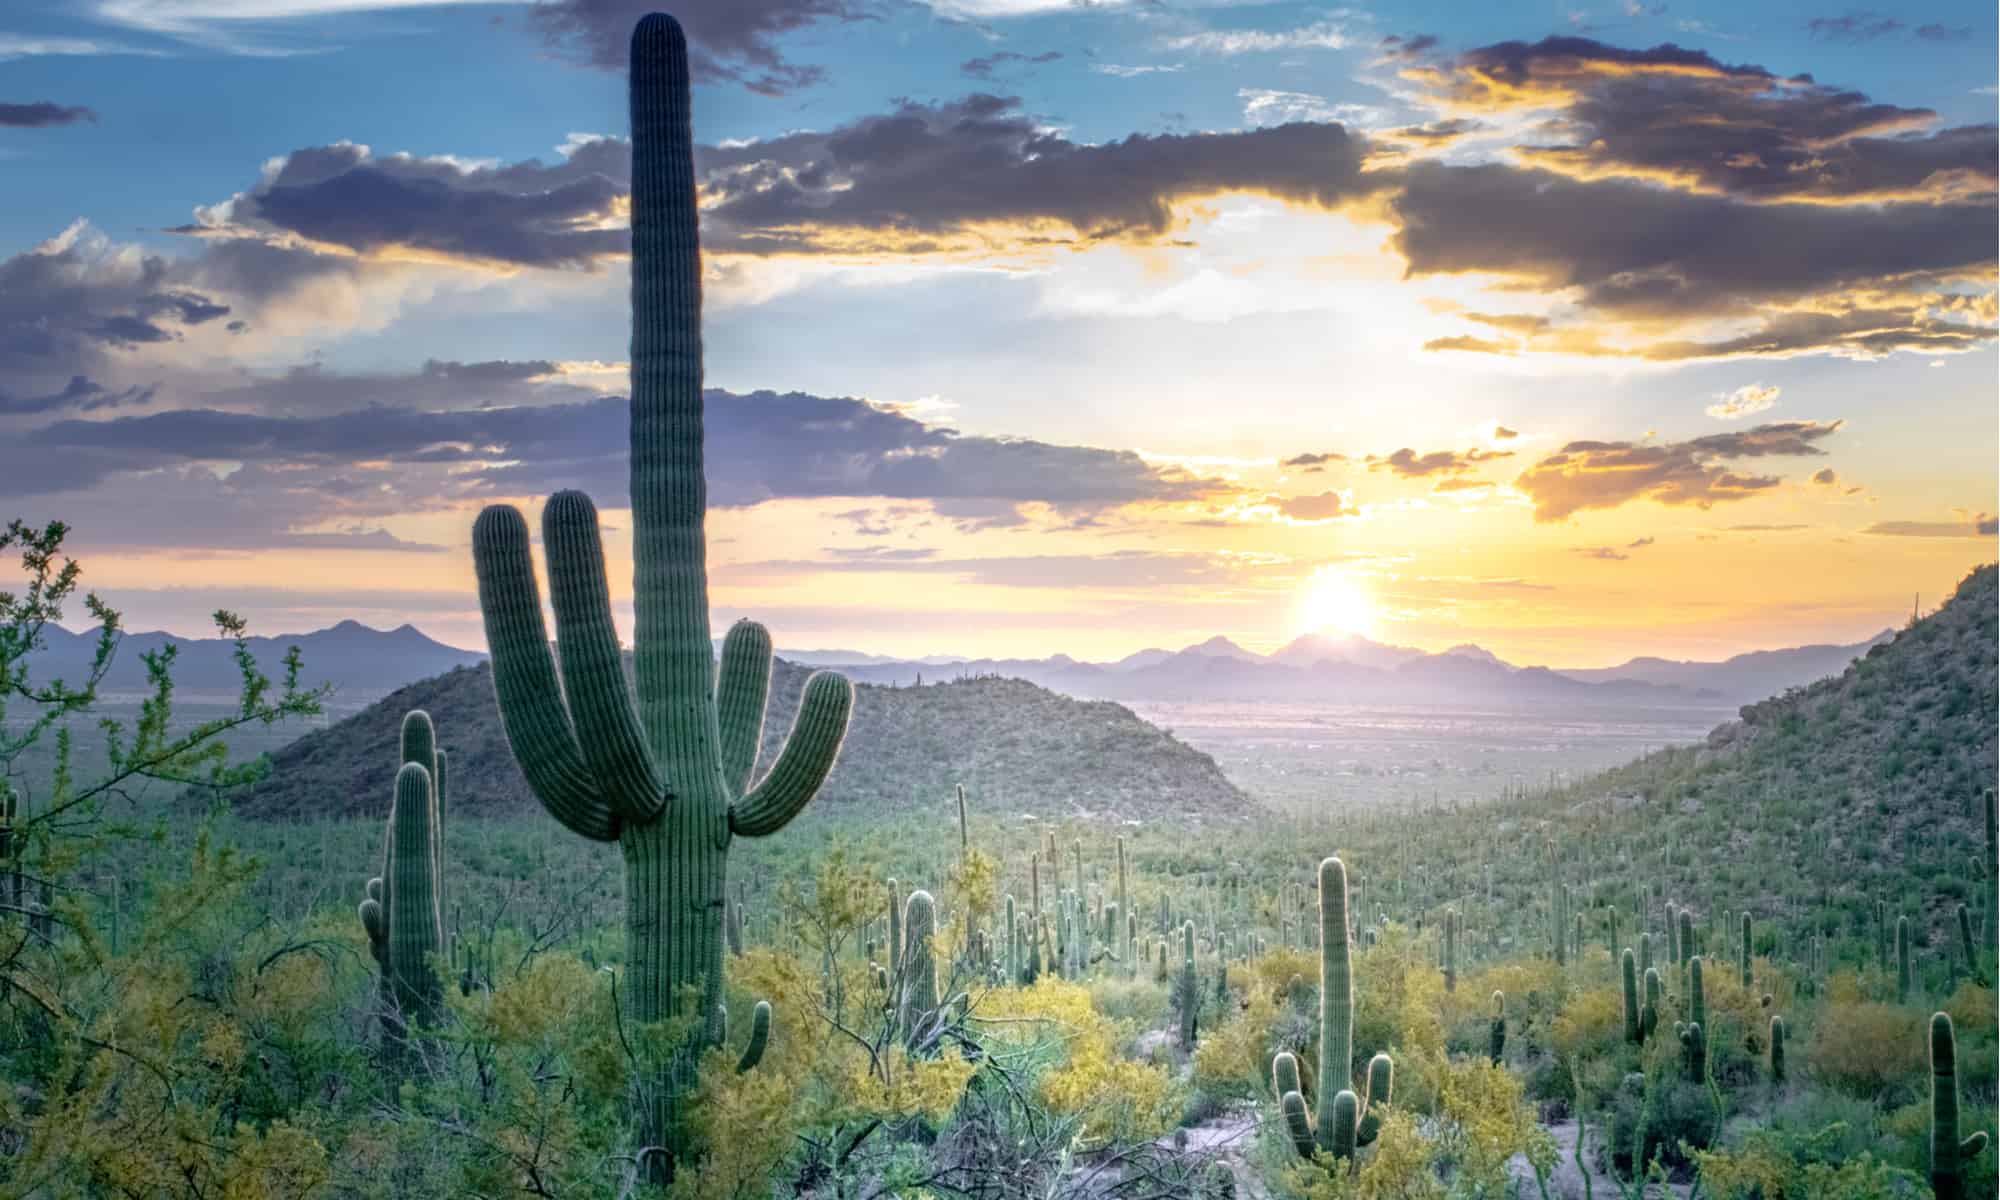 Saguaro National Park, - Cactus